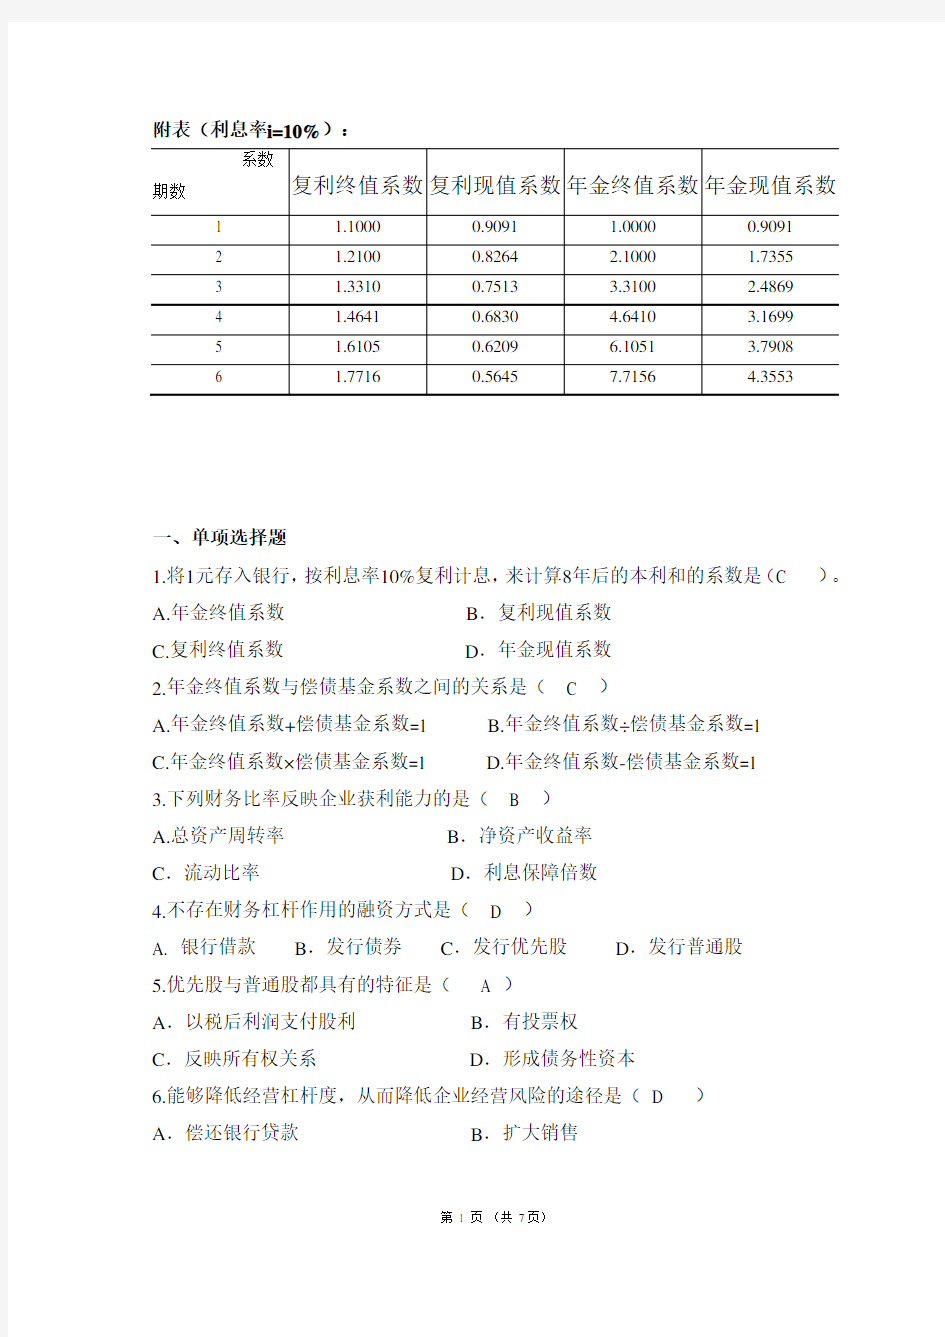 (完整版)2018年华南理工财务管理综合作业